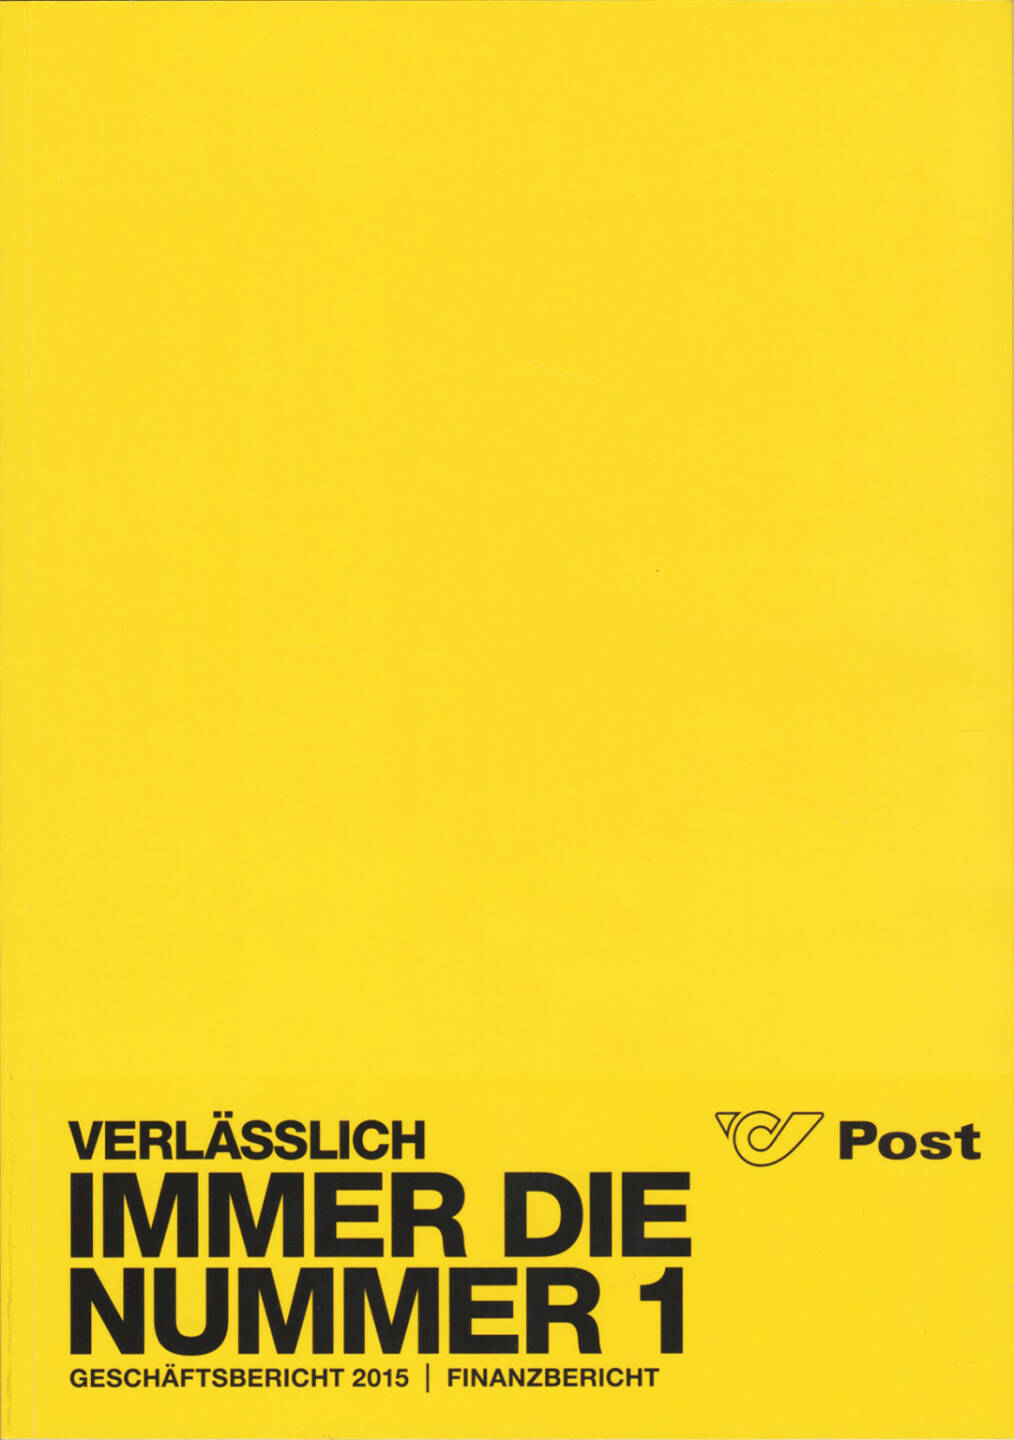 Österreichische Post Geschäftsbericht 2015 - http://boerse-social.com/companyreports/show/osterreichische_post_geschaftsbericht_2015